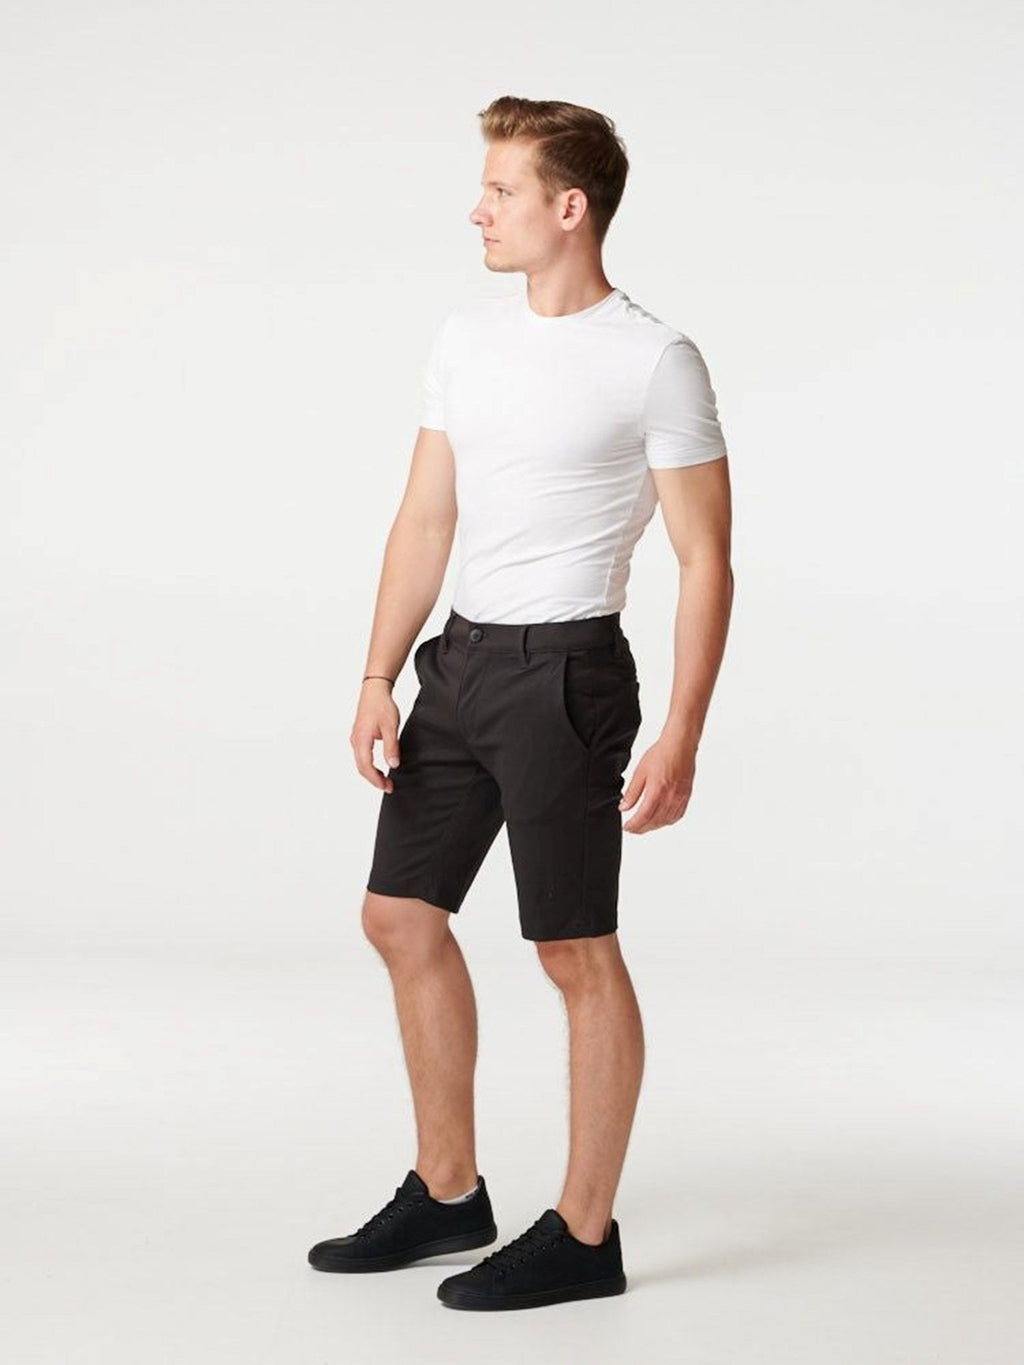 Chino shorts - donkergrijs